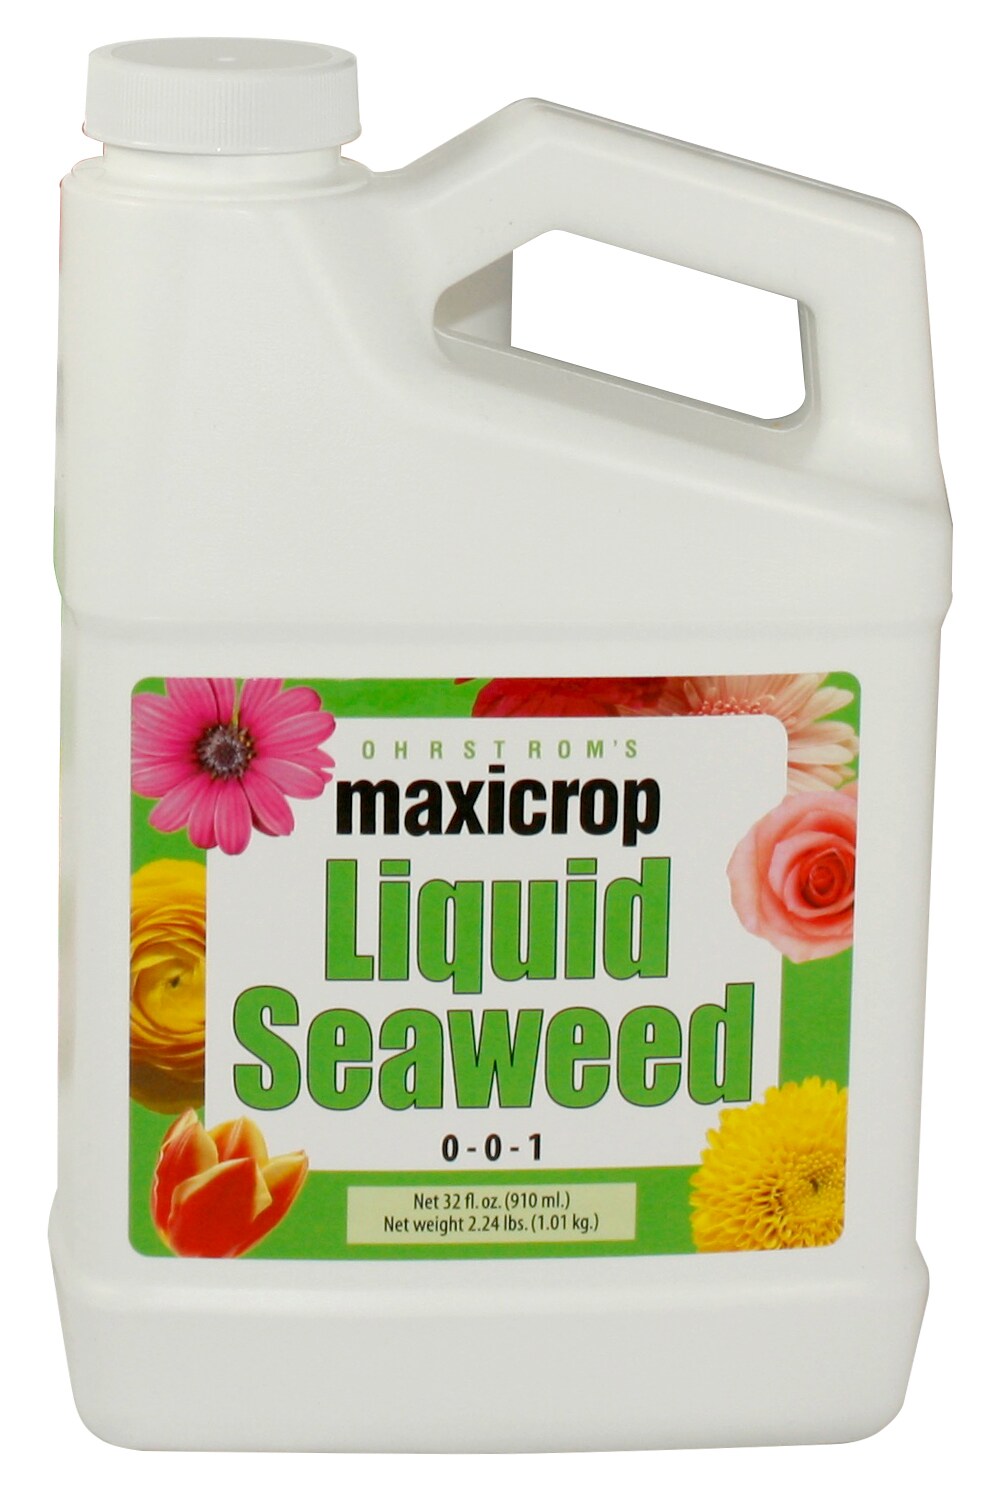 1 Pound Organic Maxicrop Kelp Meal 1-0-2 Natural Norwegian Seaweed Fertilizer 